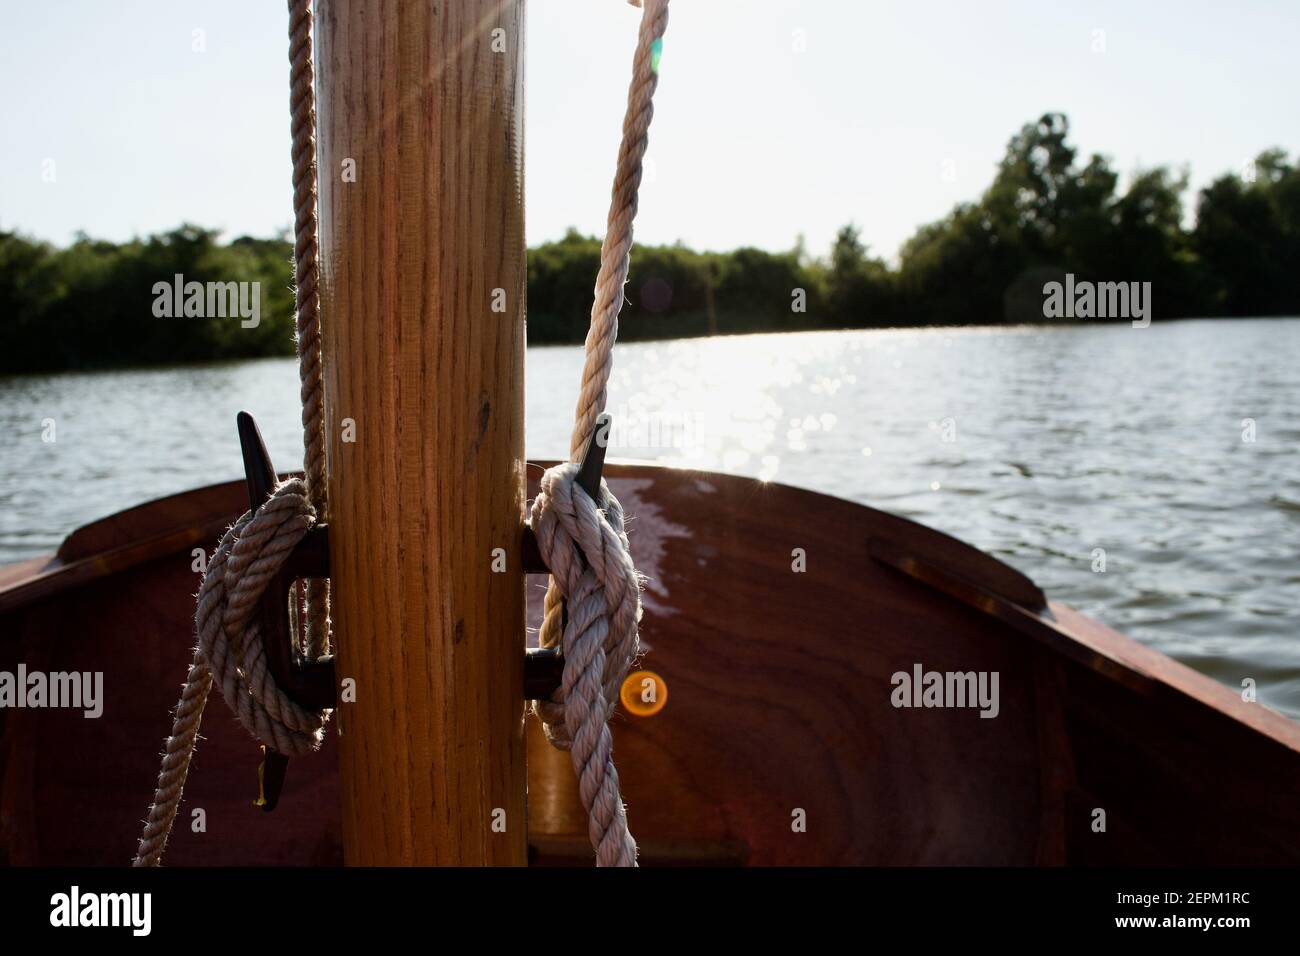 Gros plan des crampons sur le mât en bois d'un petit voilier (canot pneumatique) : cordes (halyards) attachées en nœuds libres, un lac ou une rivière en arrière-plan Banque D'Images